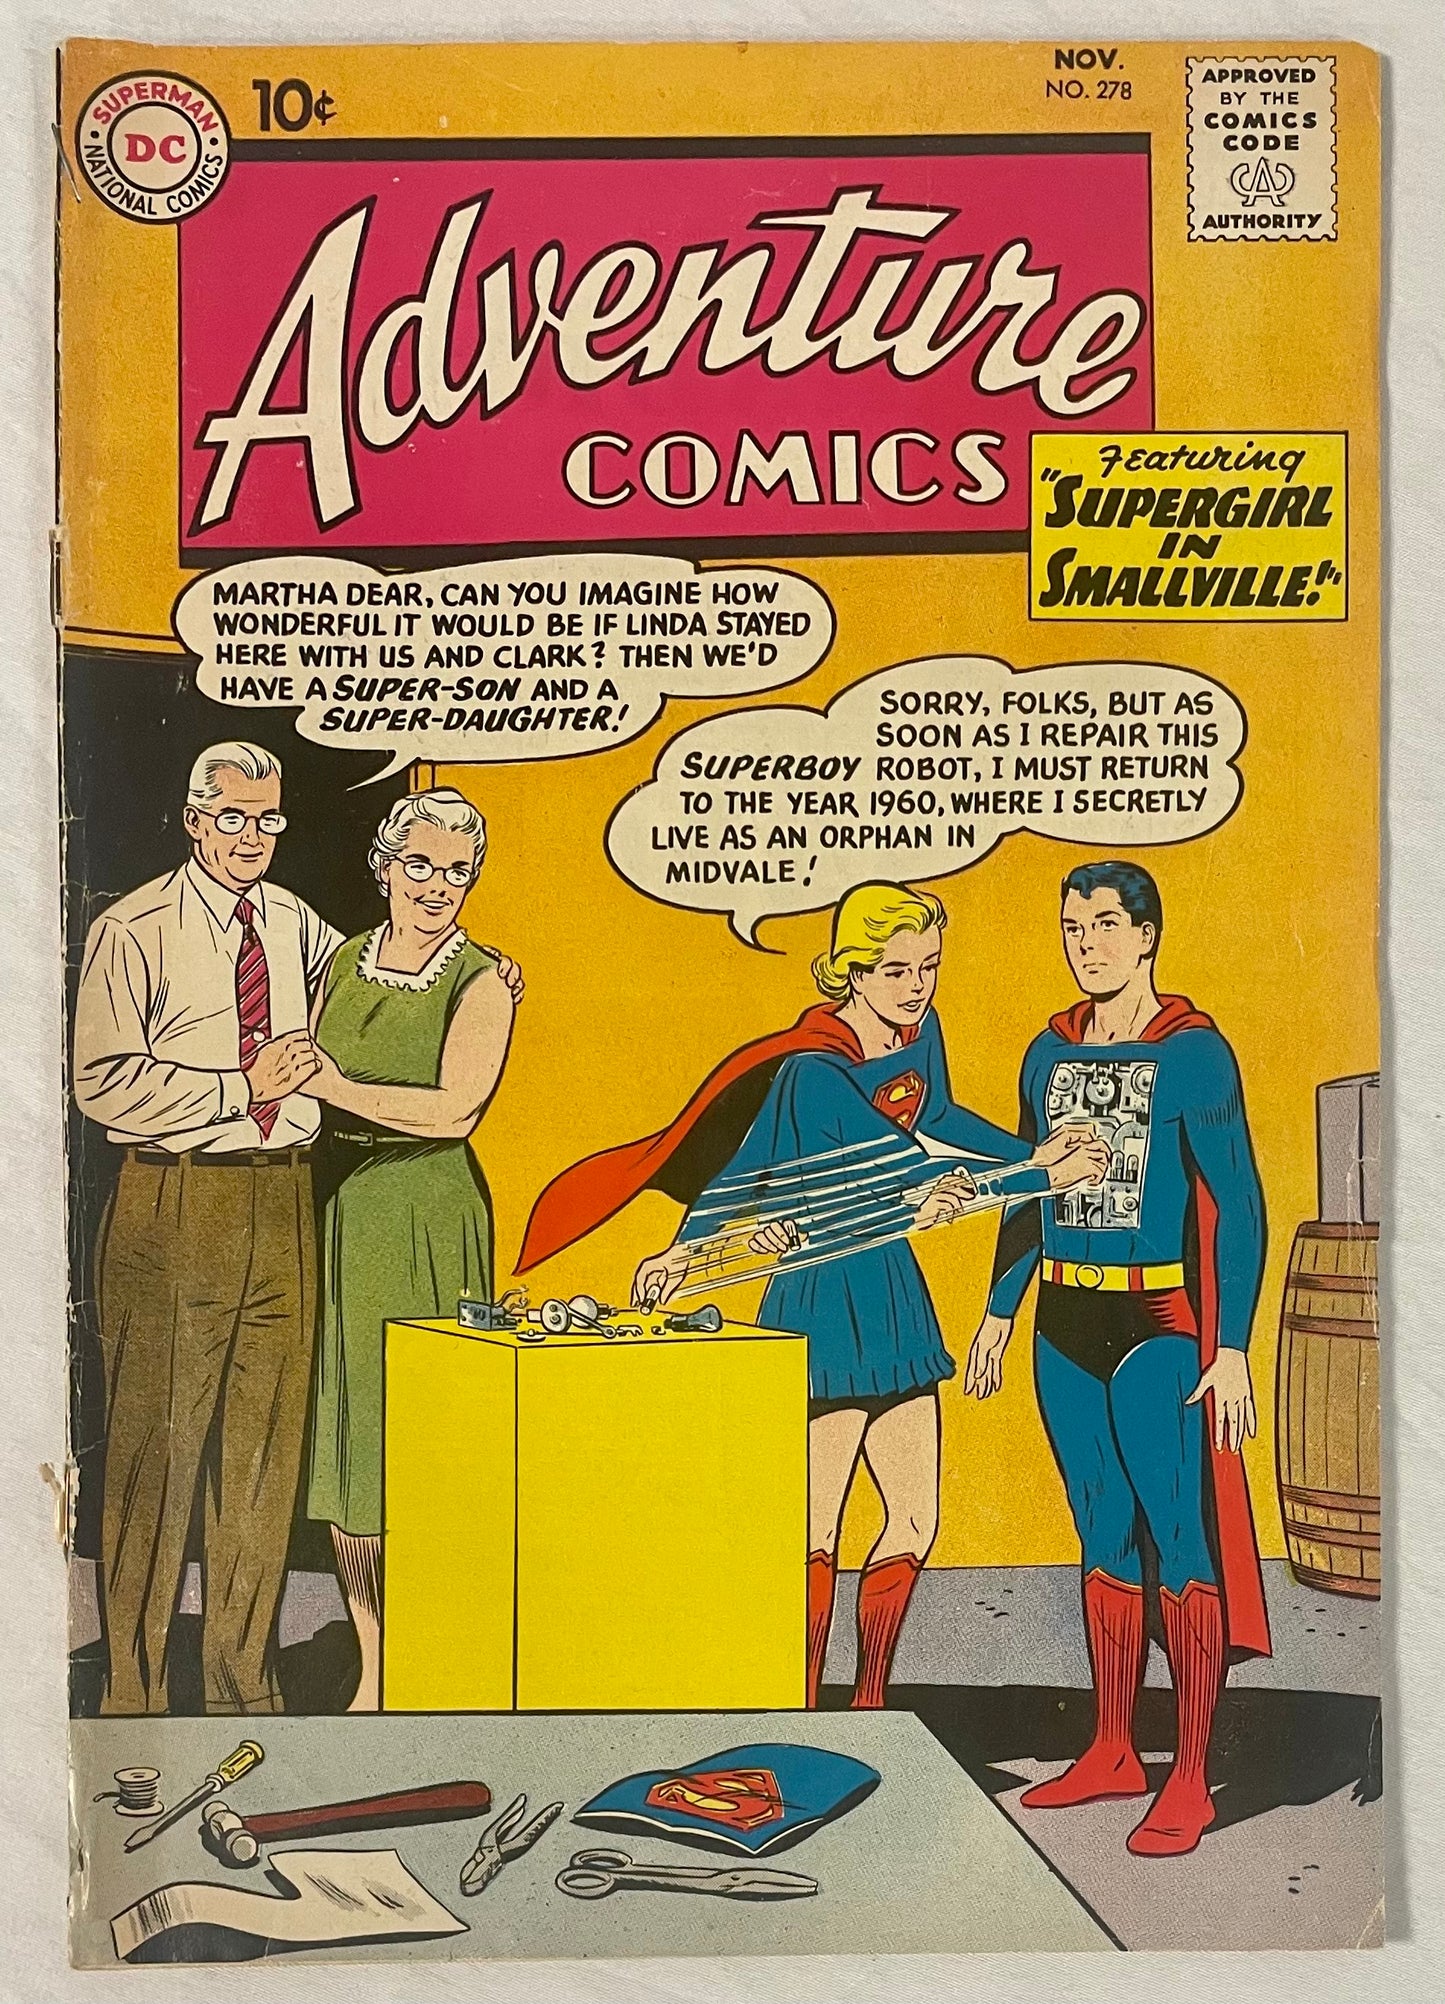 DC Comics Adventure Comics No. 278